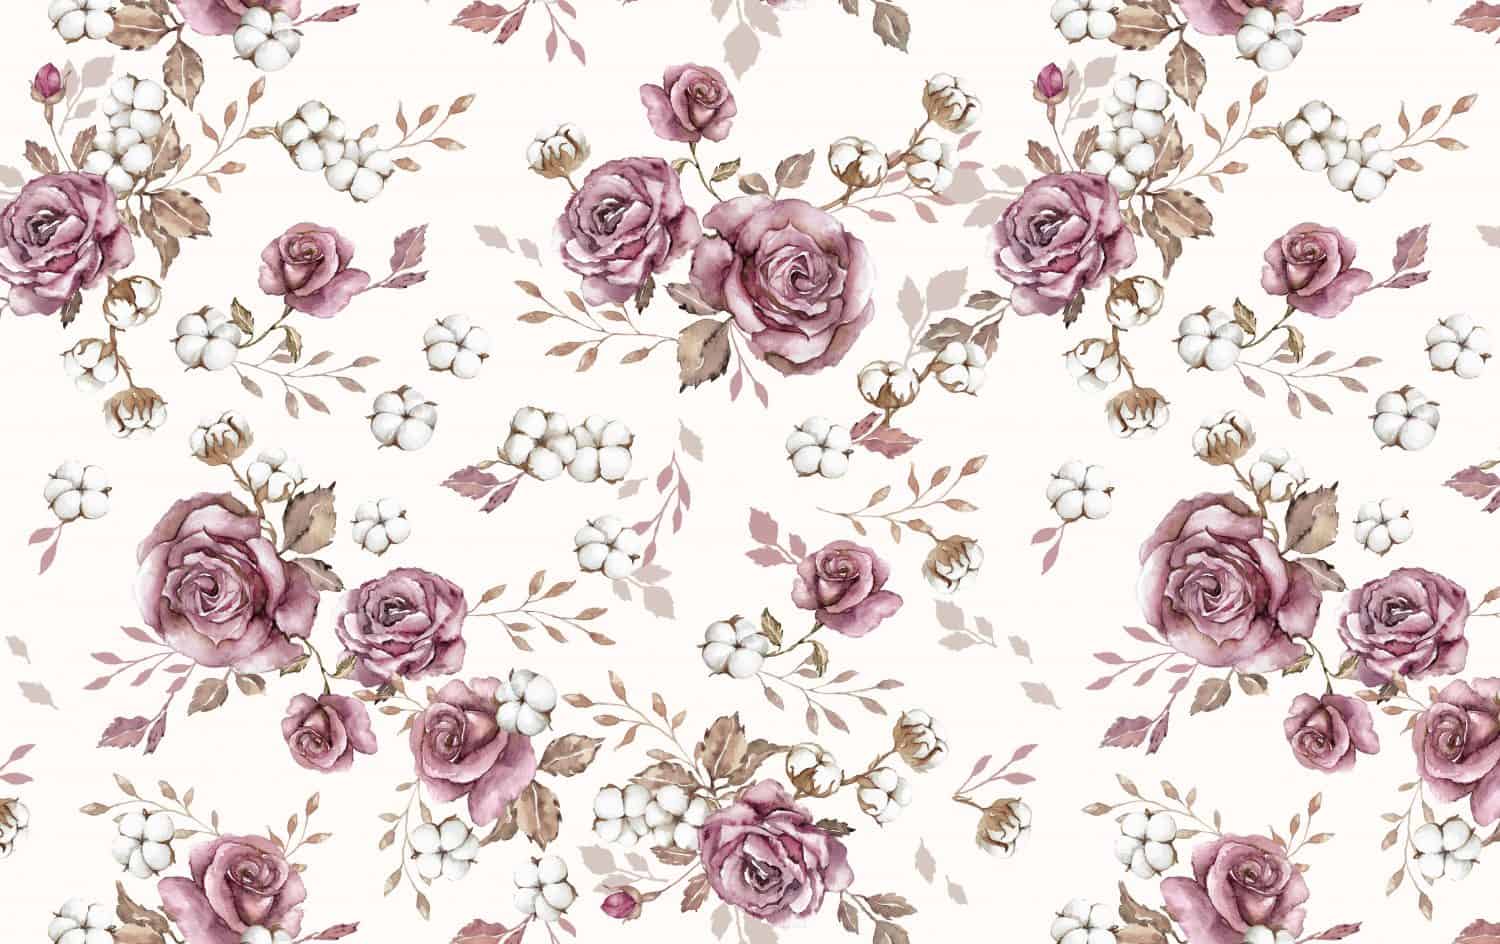 English roses seamless pattern design